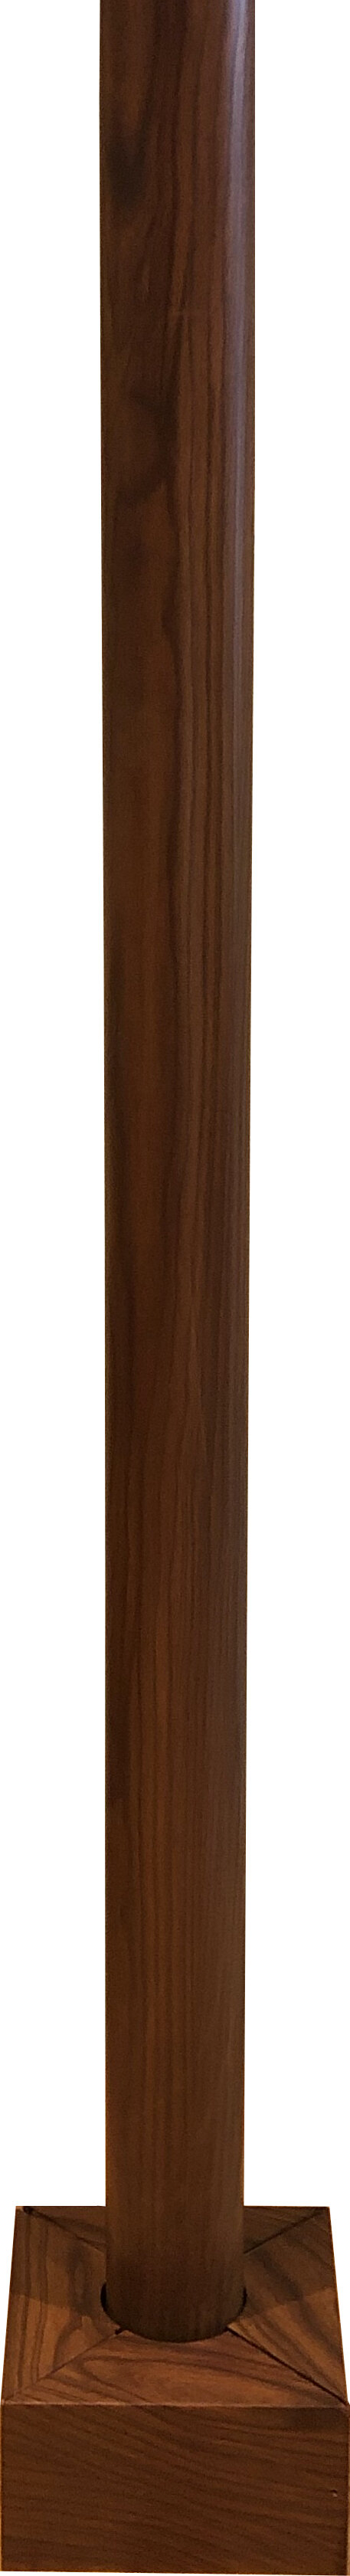 Wood Pole.jpg